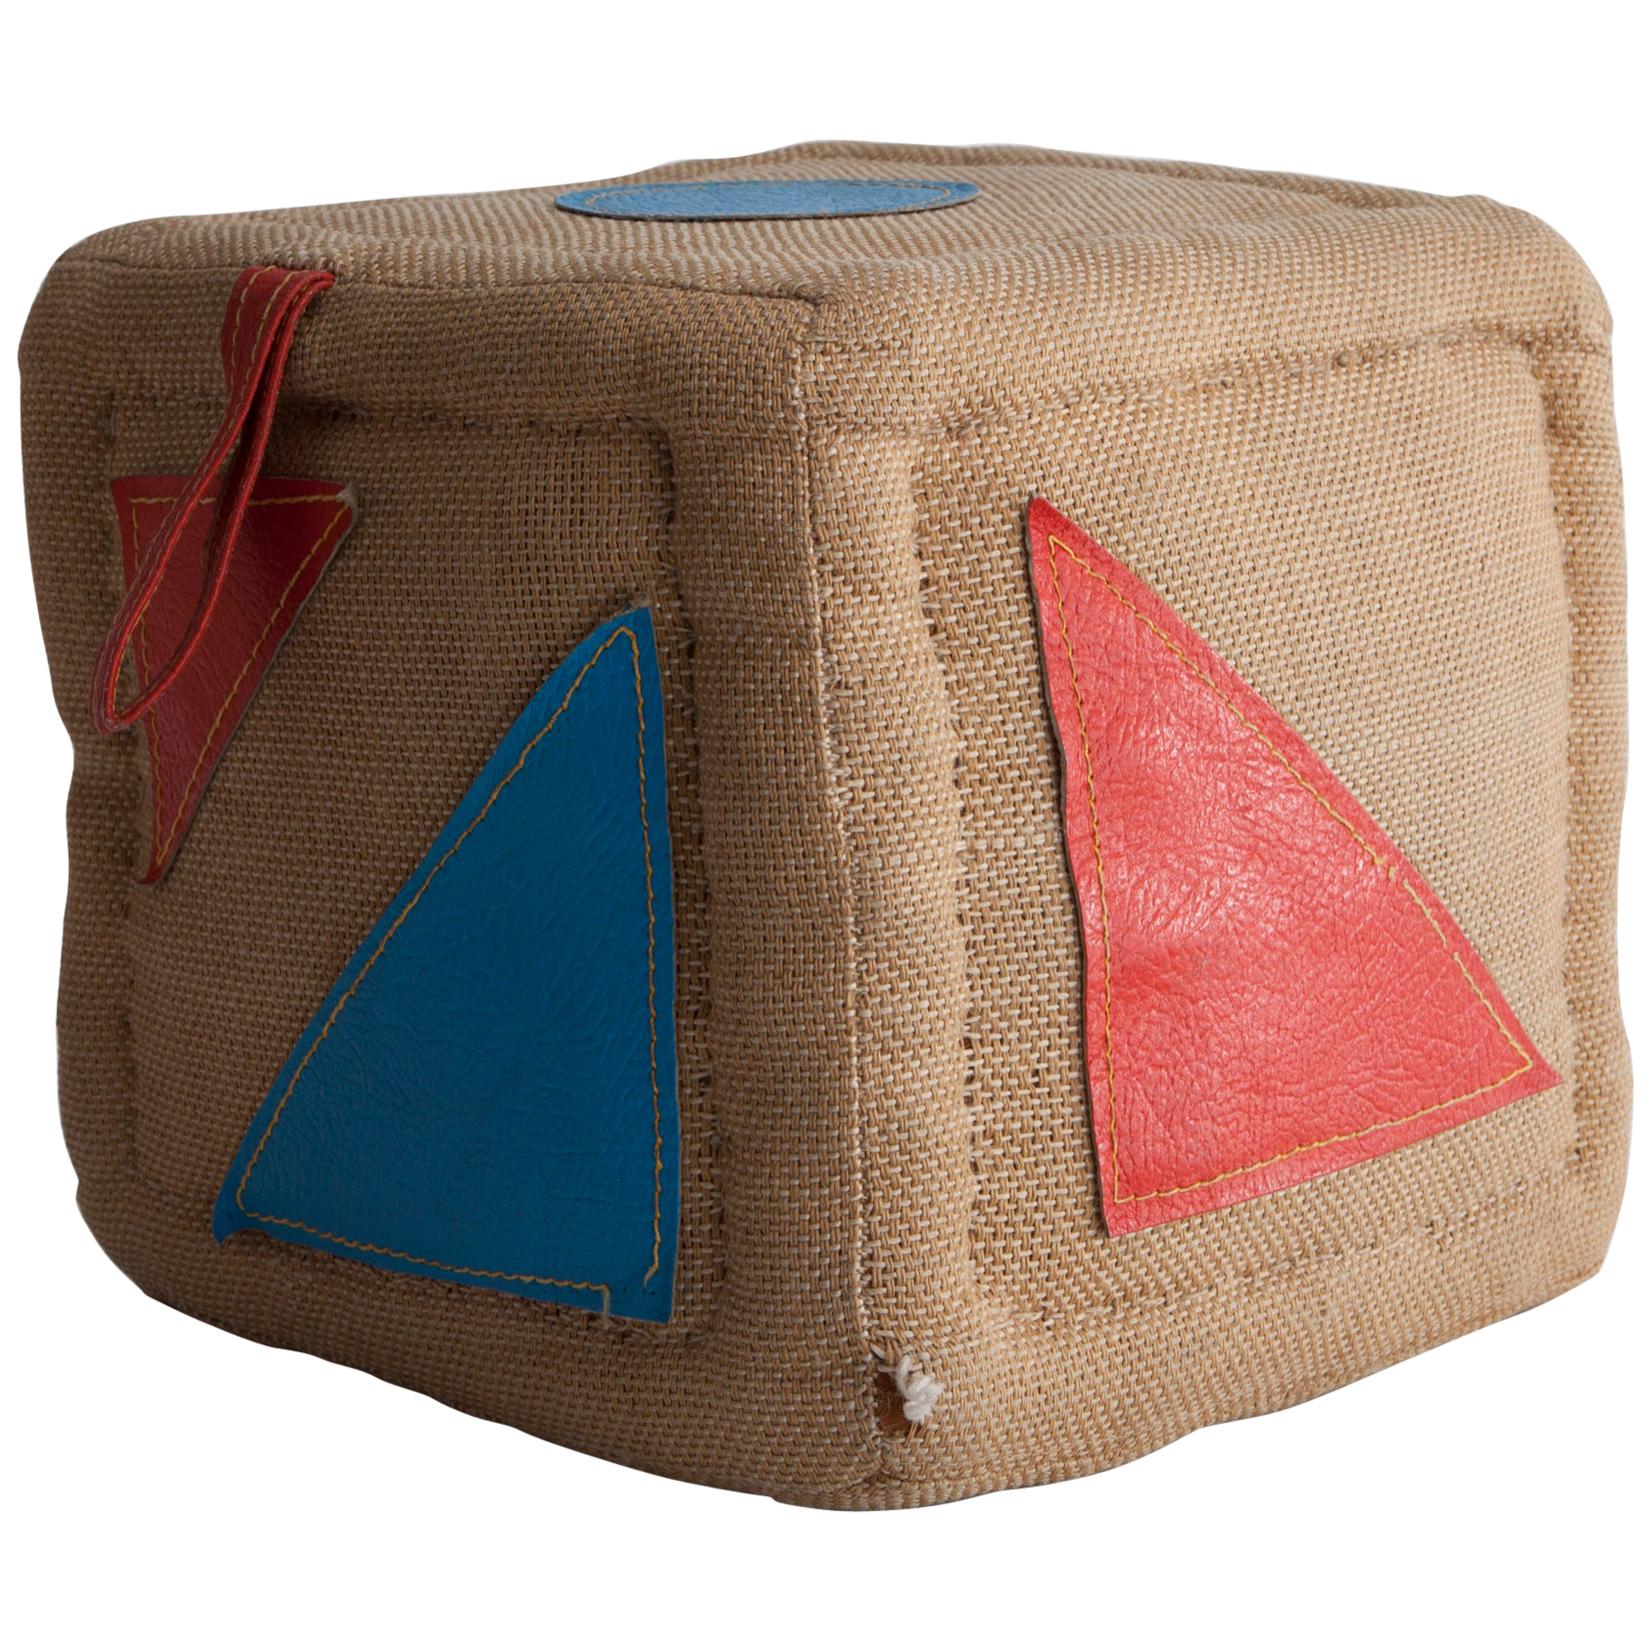 Cube de jouets thérapeutiques en jute avec cuir de Renate Müller, 1968-1974